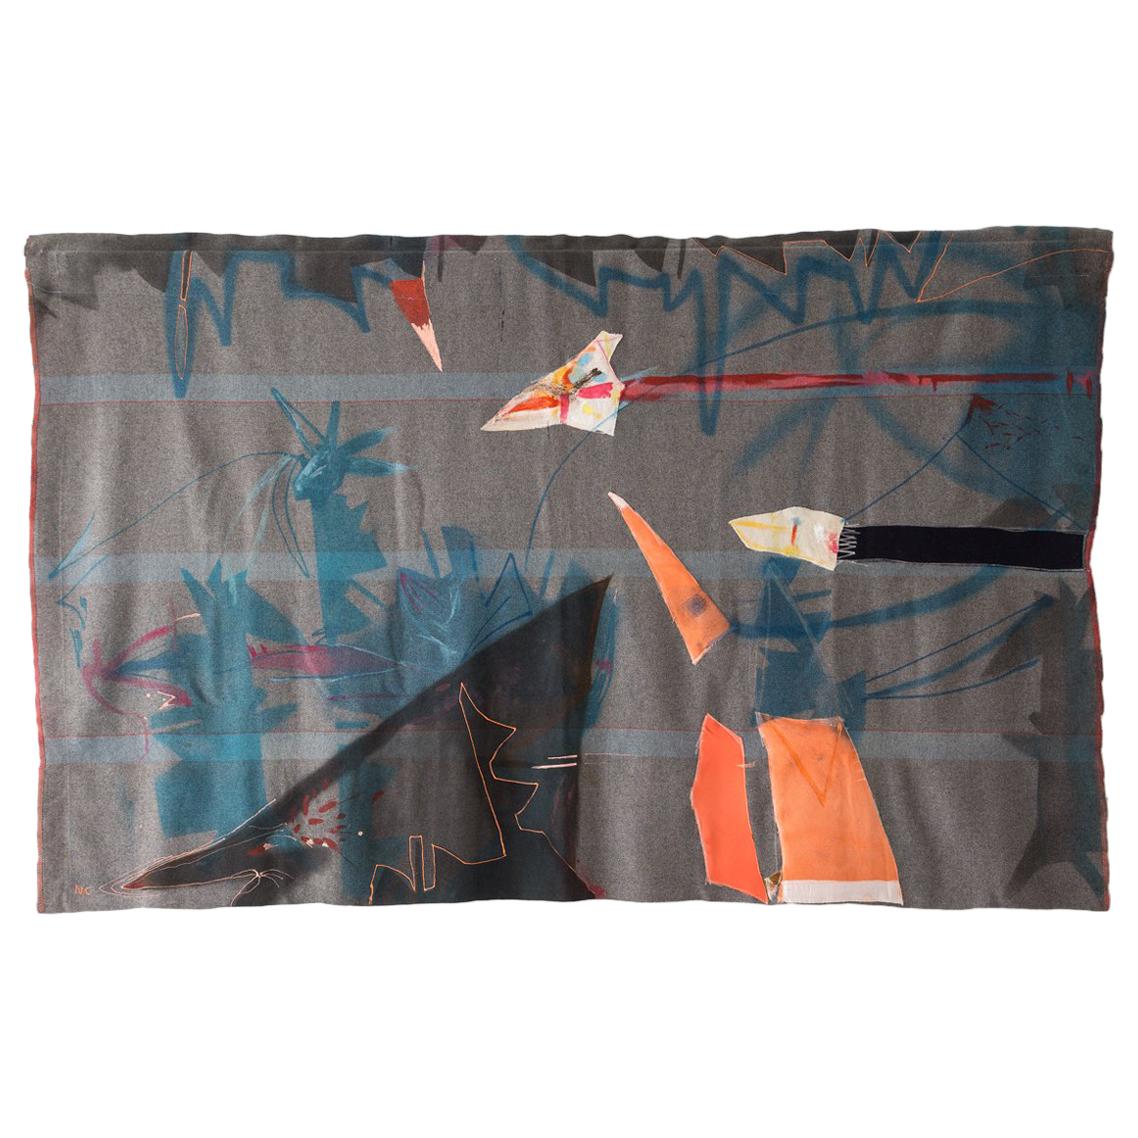 „Flytape“ Steppdecke, Gemälde, Wolle, Wandteppich, Textilkunst, auf Lager